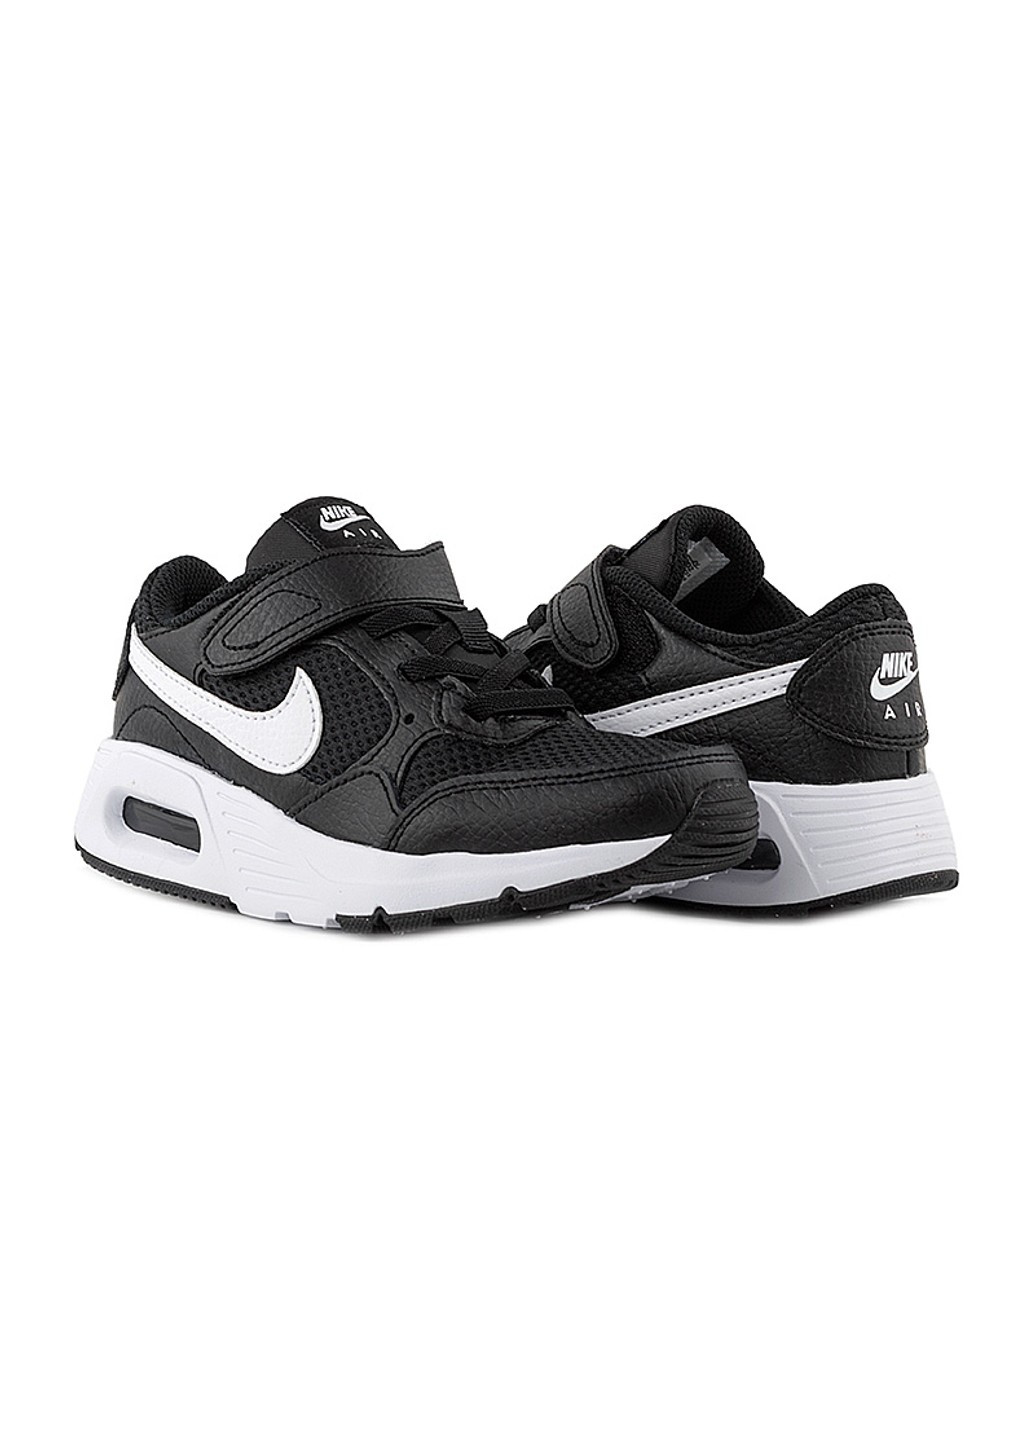 Черные демисезонные кроссовки air max sc (psv) Nike